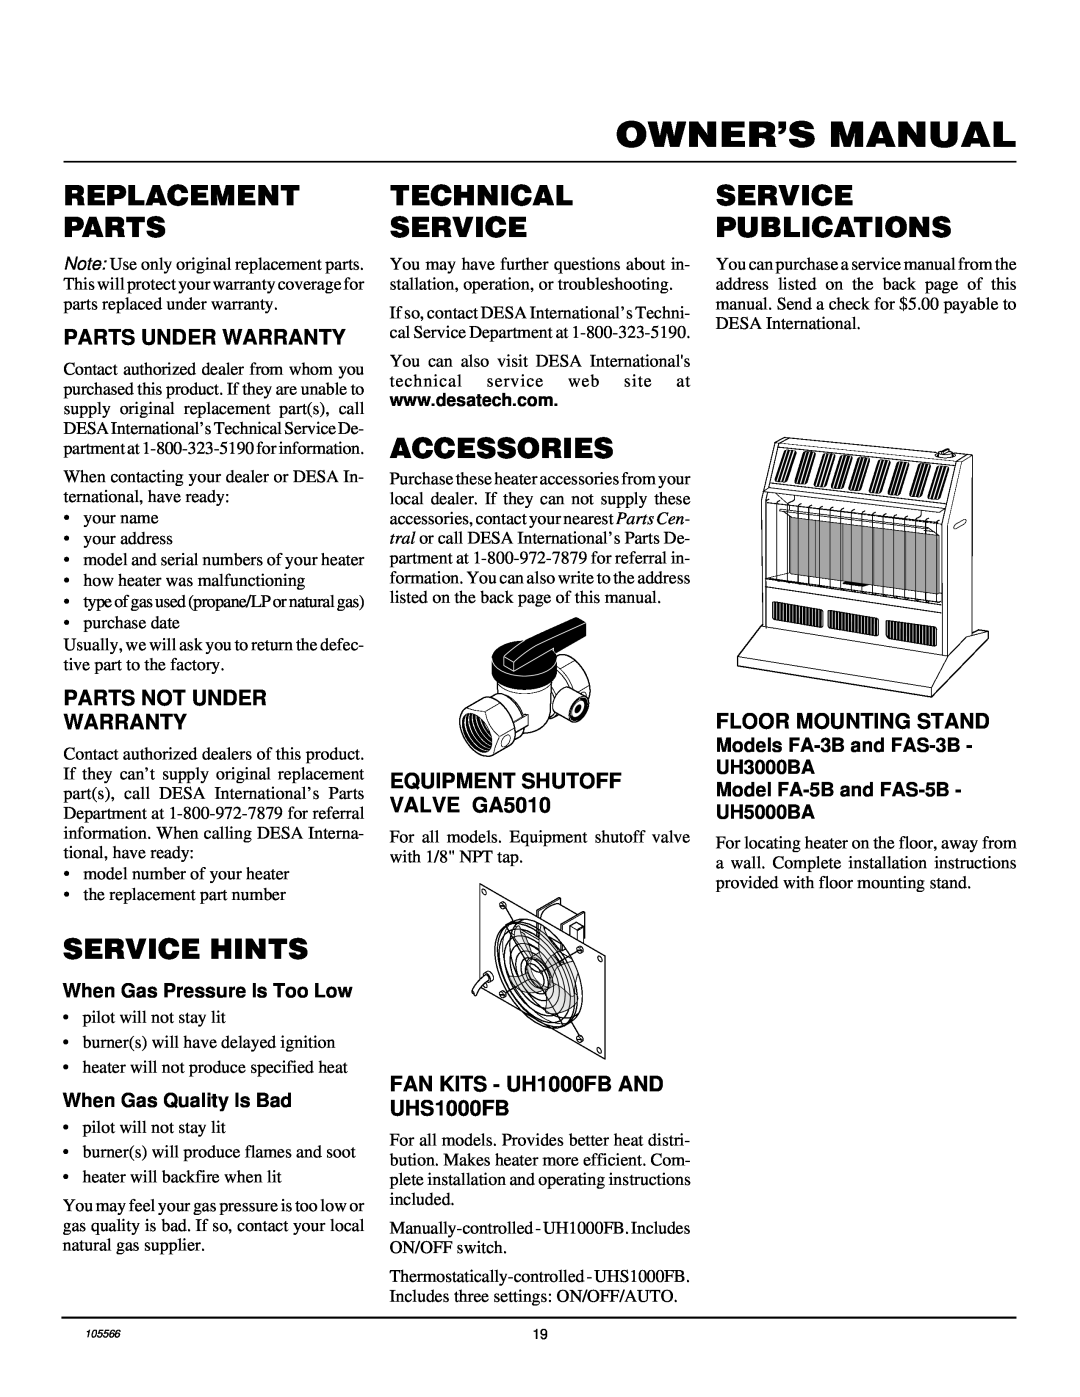 Desa FAS-5C Replacement Parts, Service Hints, Technical Service, Accessories, Service Publications, Parts Under Warranty 